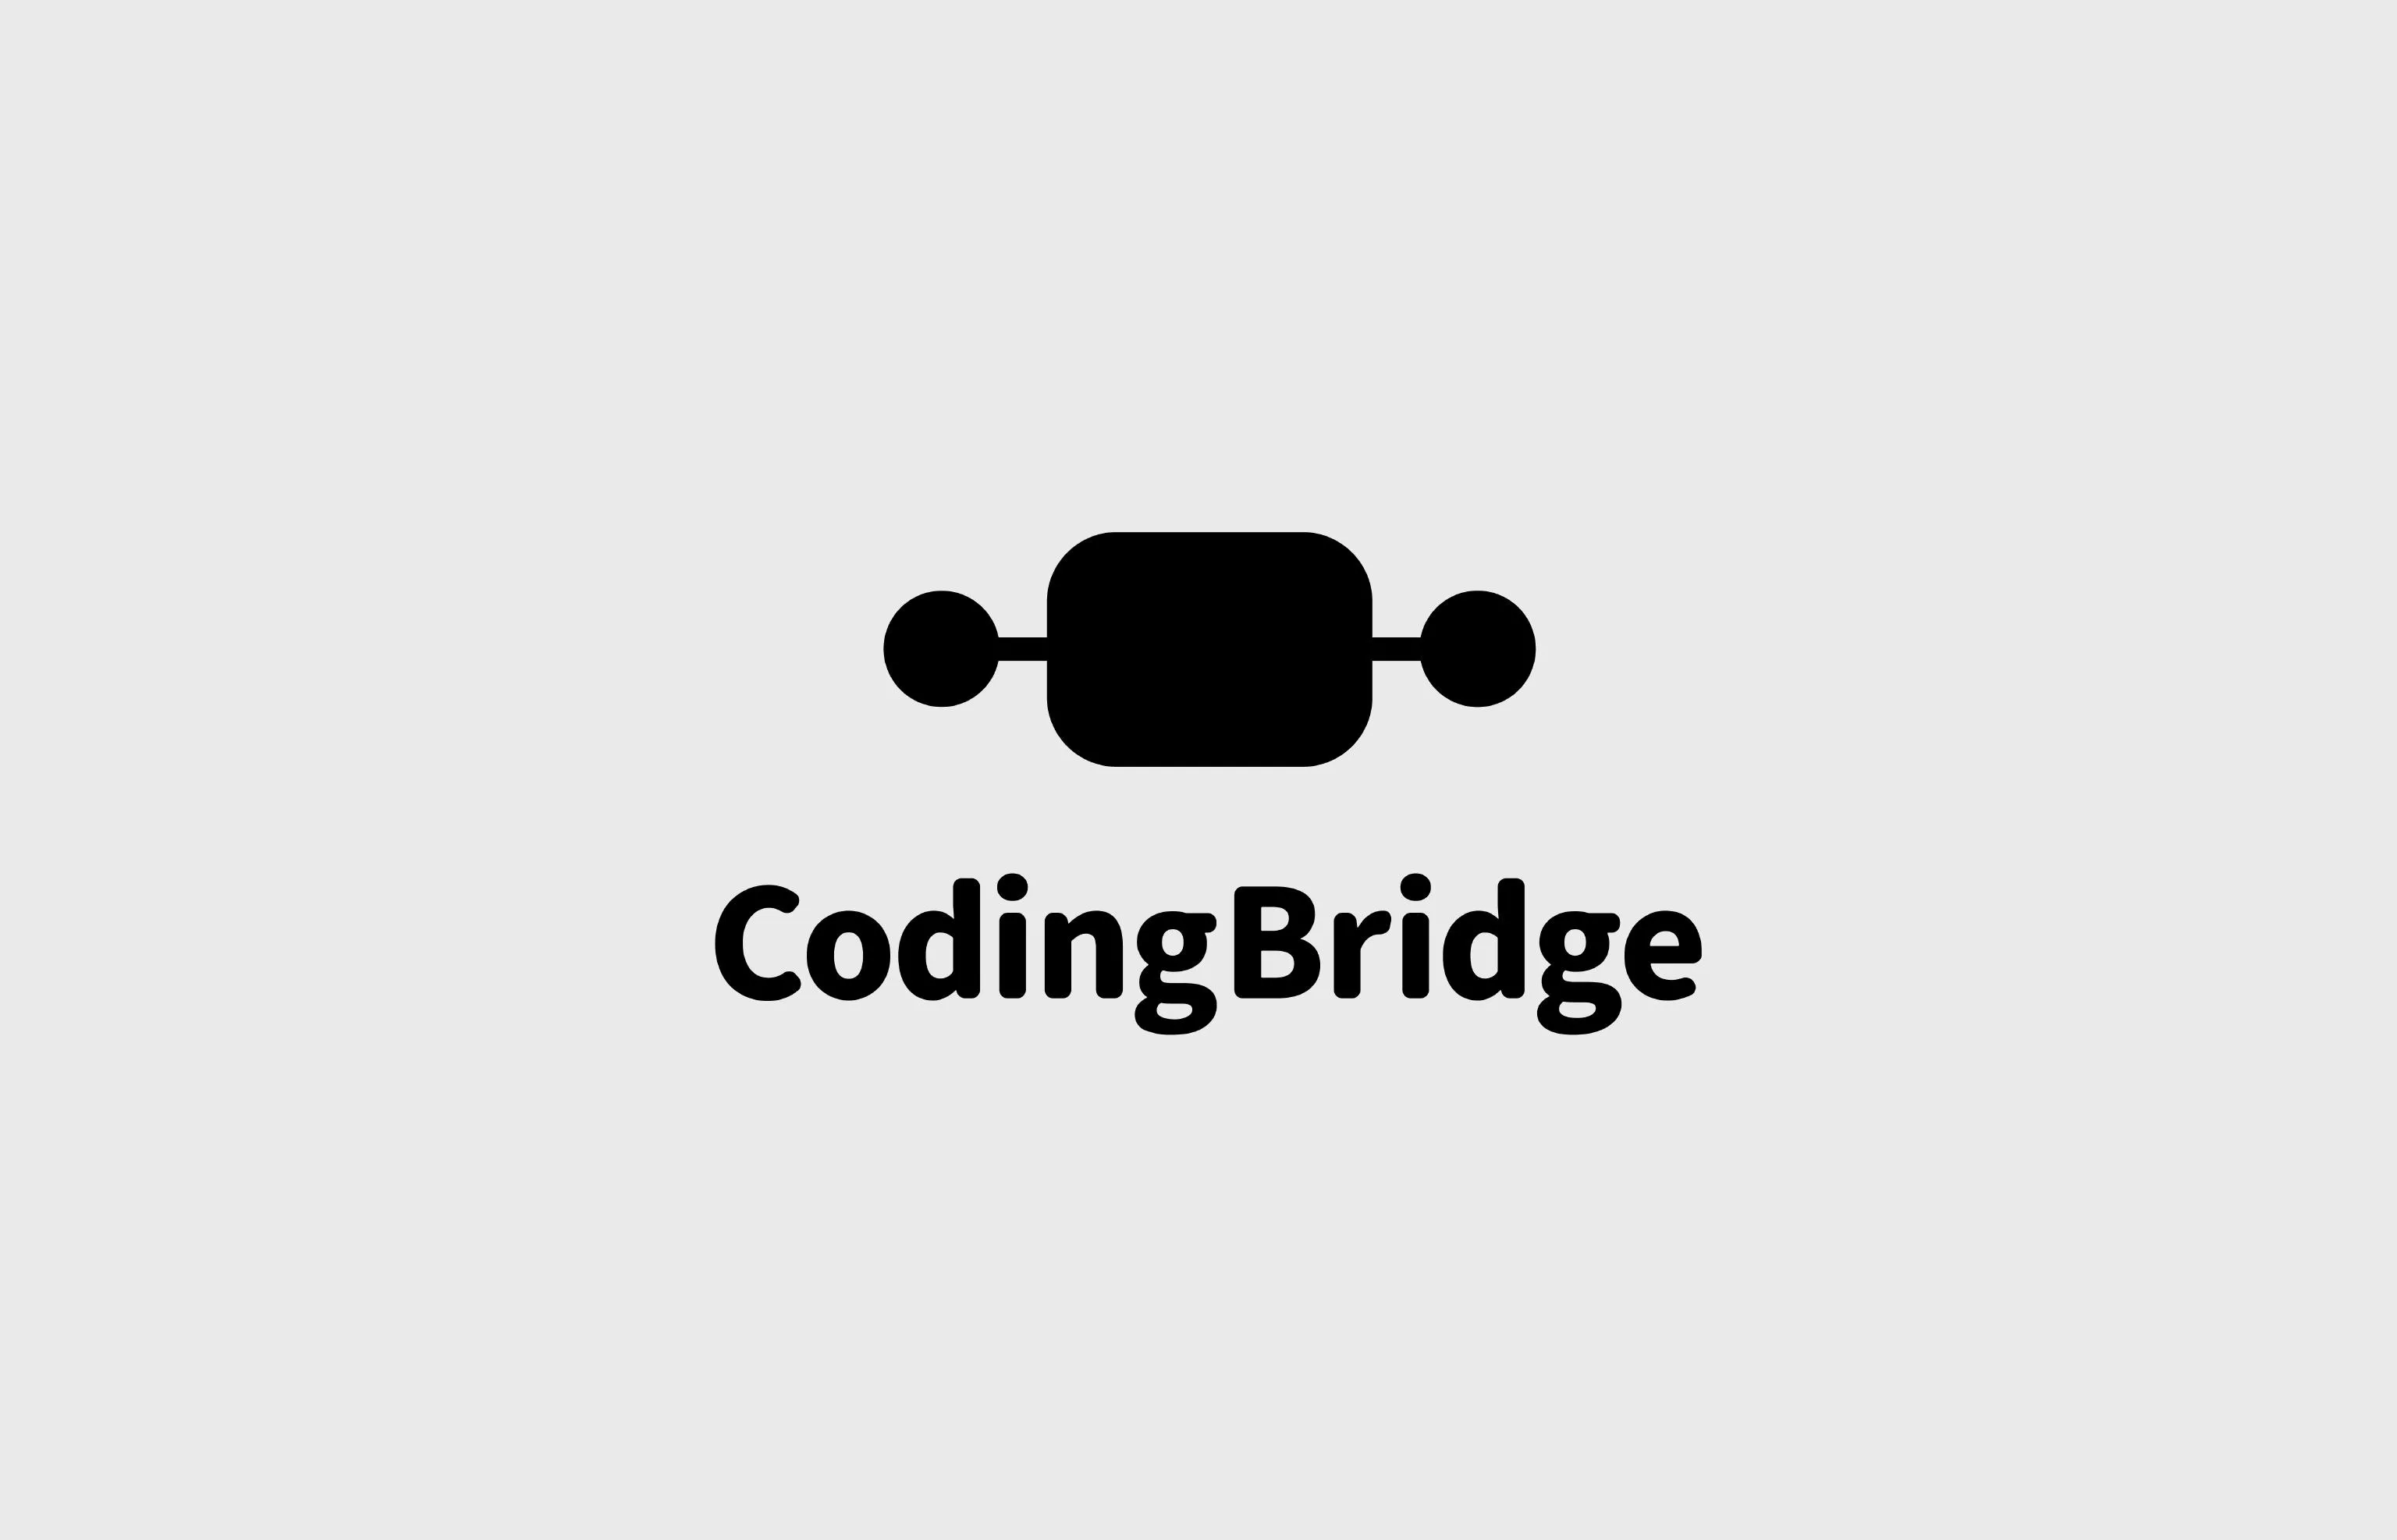 CodingBridge logo